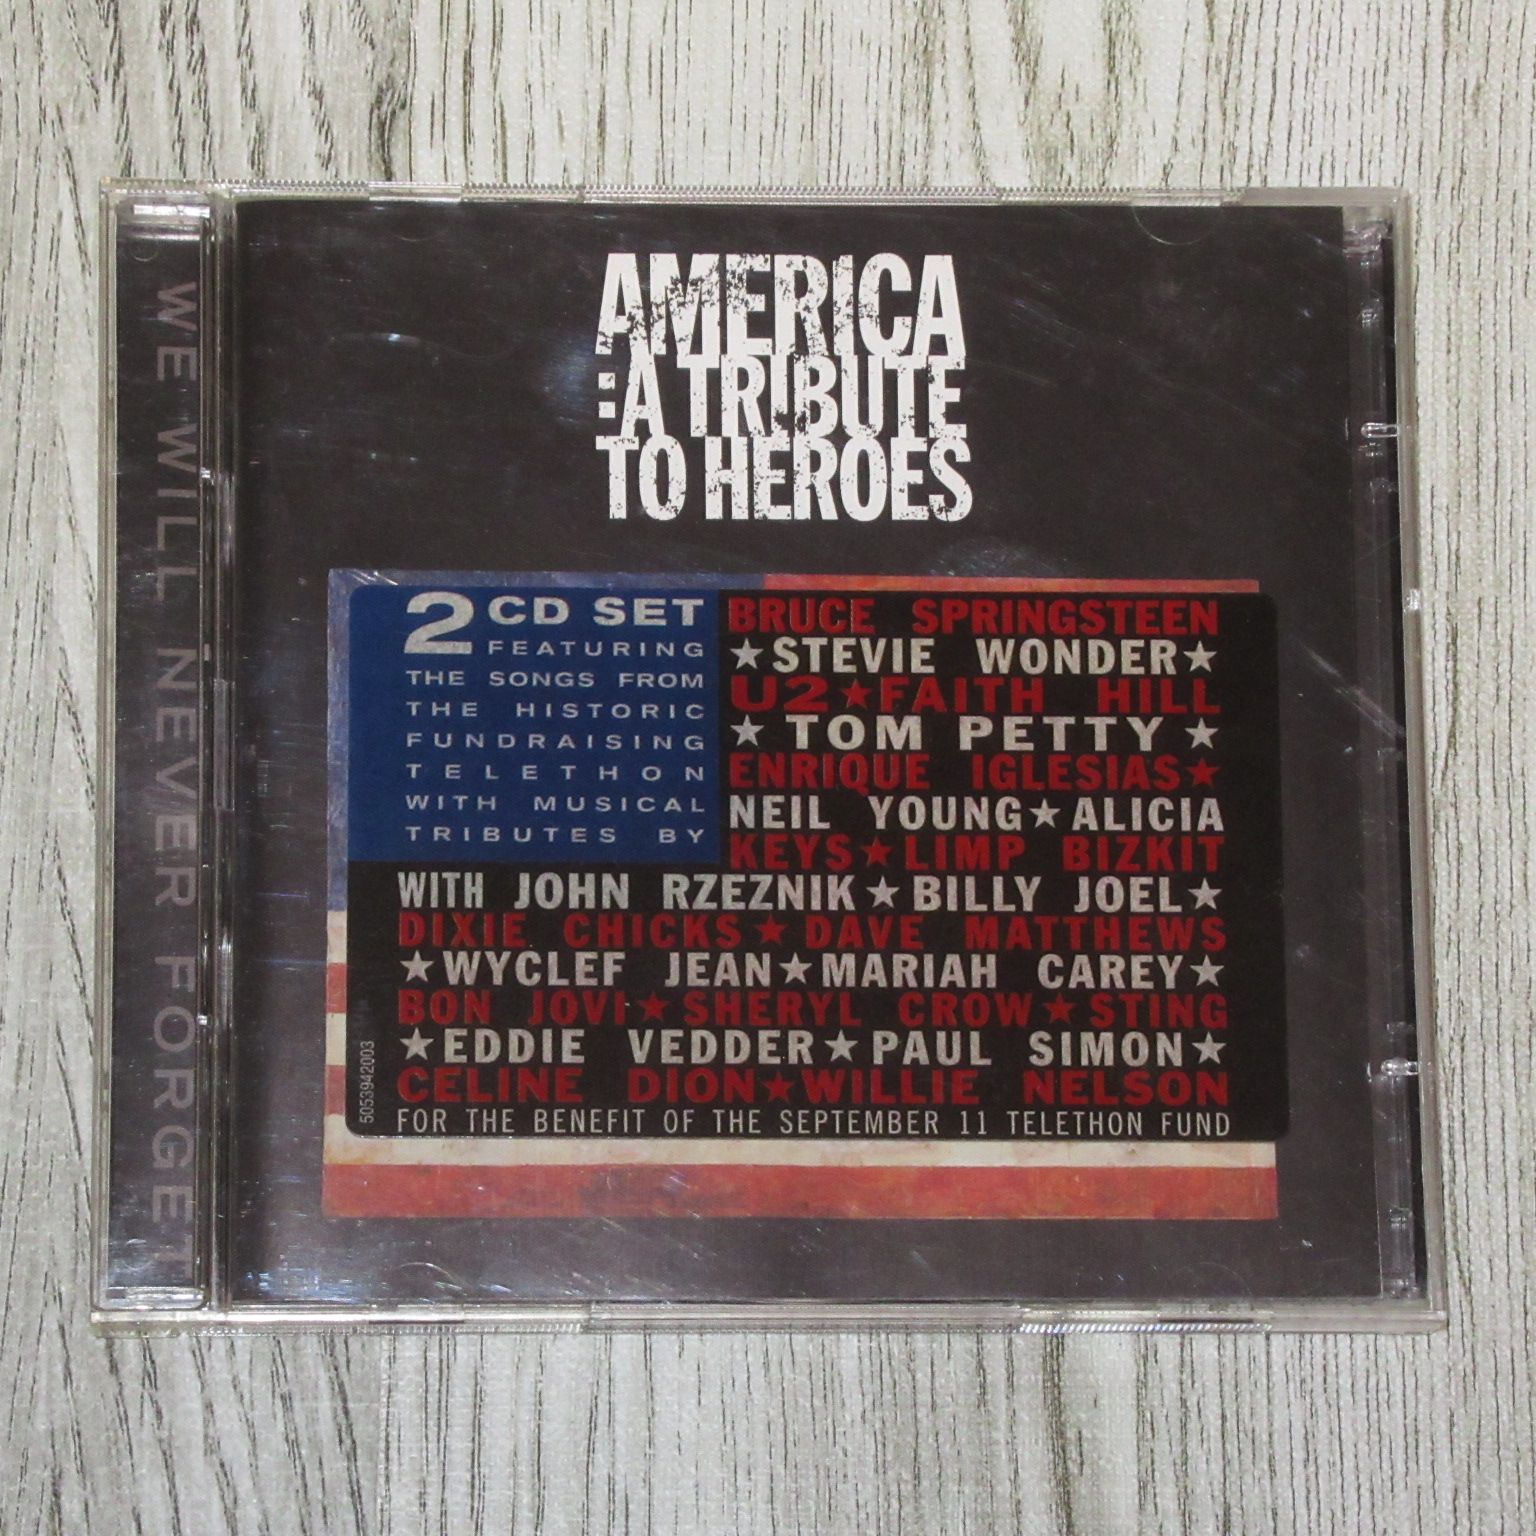 CD AMERICA A TRIBUTE TO HEROES 2CD アメリカ ア・トリビュート・トゥ・ヒーローズ ブルース・スプリングスティーン  スティーヴィー・ワンダー U2 トム・ペティ ニール・ヤング ボン・ジョヴィ スティング ポール・サイモン 他 - メルカリ